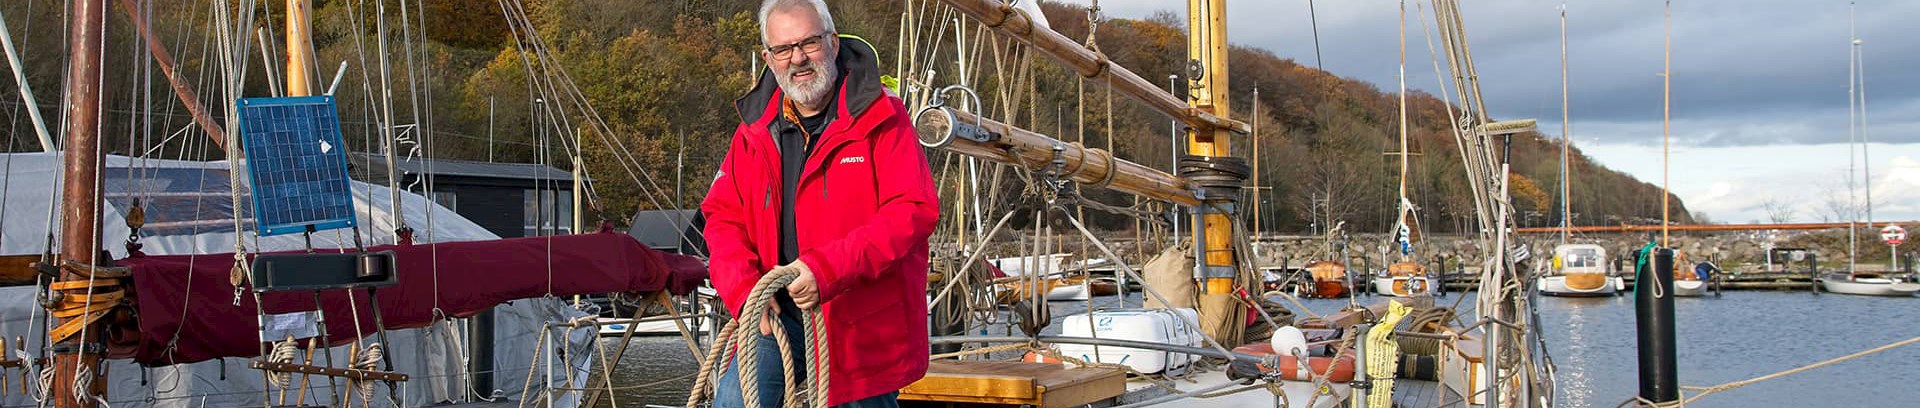 Poul Kjærgård sejlerunderviser ved FOF Aarhus, på båd i Aarhus Havn. Underviser i Skipper duelighedsprøve teori-kursus